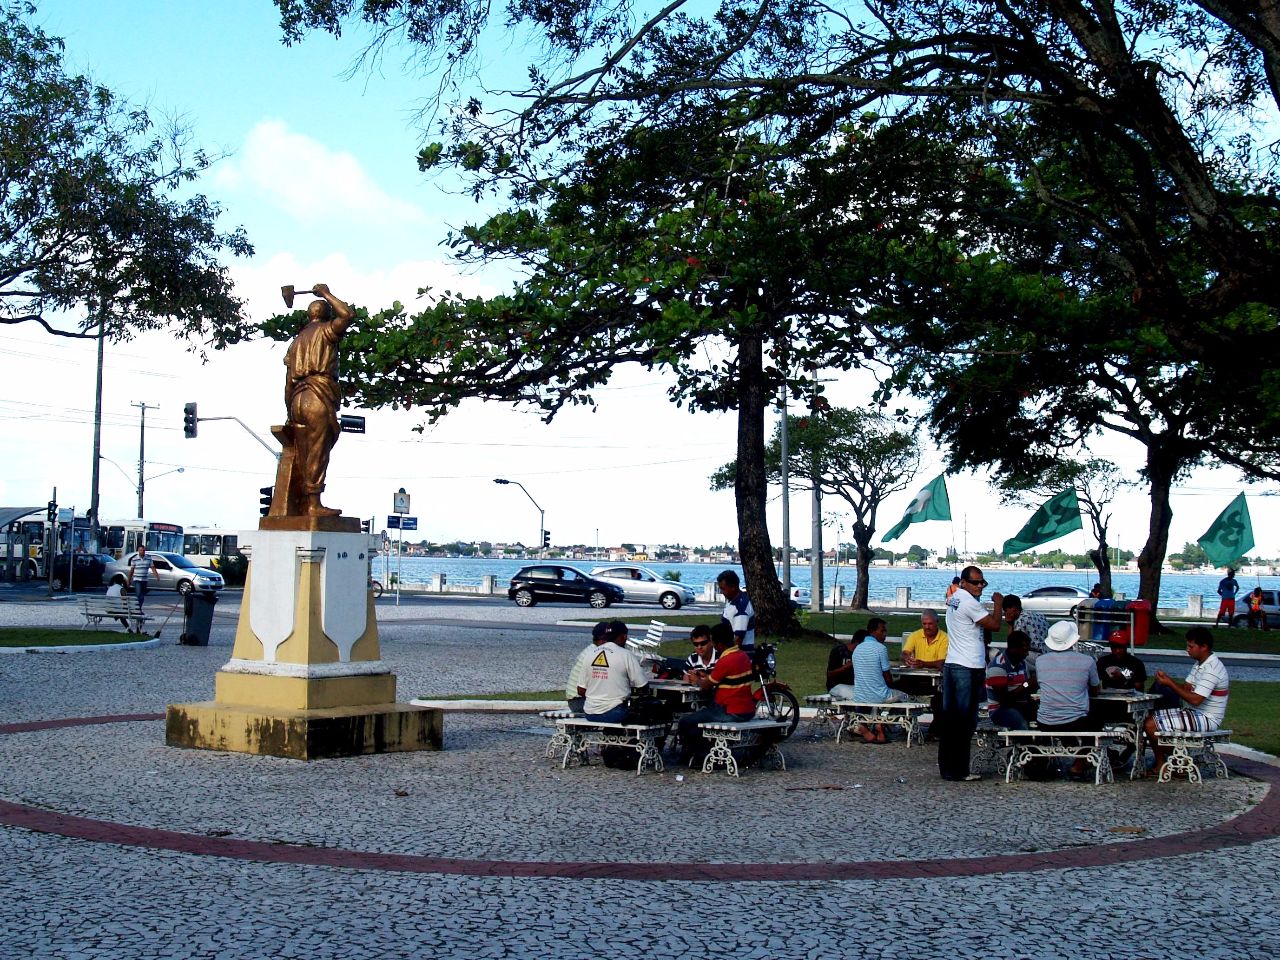 Площадь Фаусту Кардозу Аракажу, Бразилия